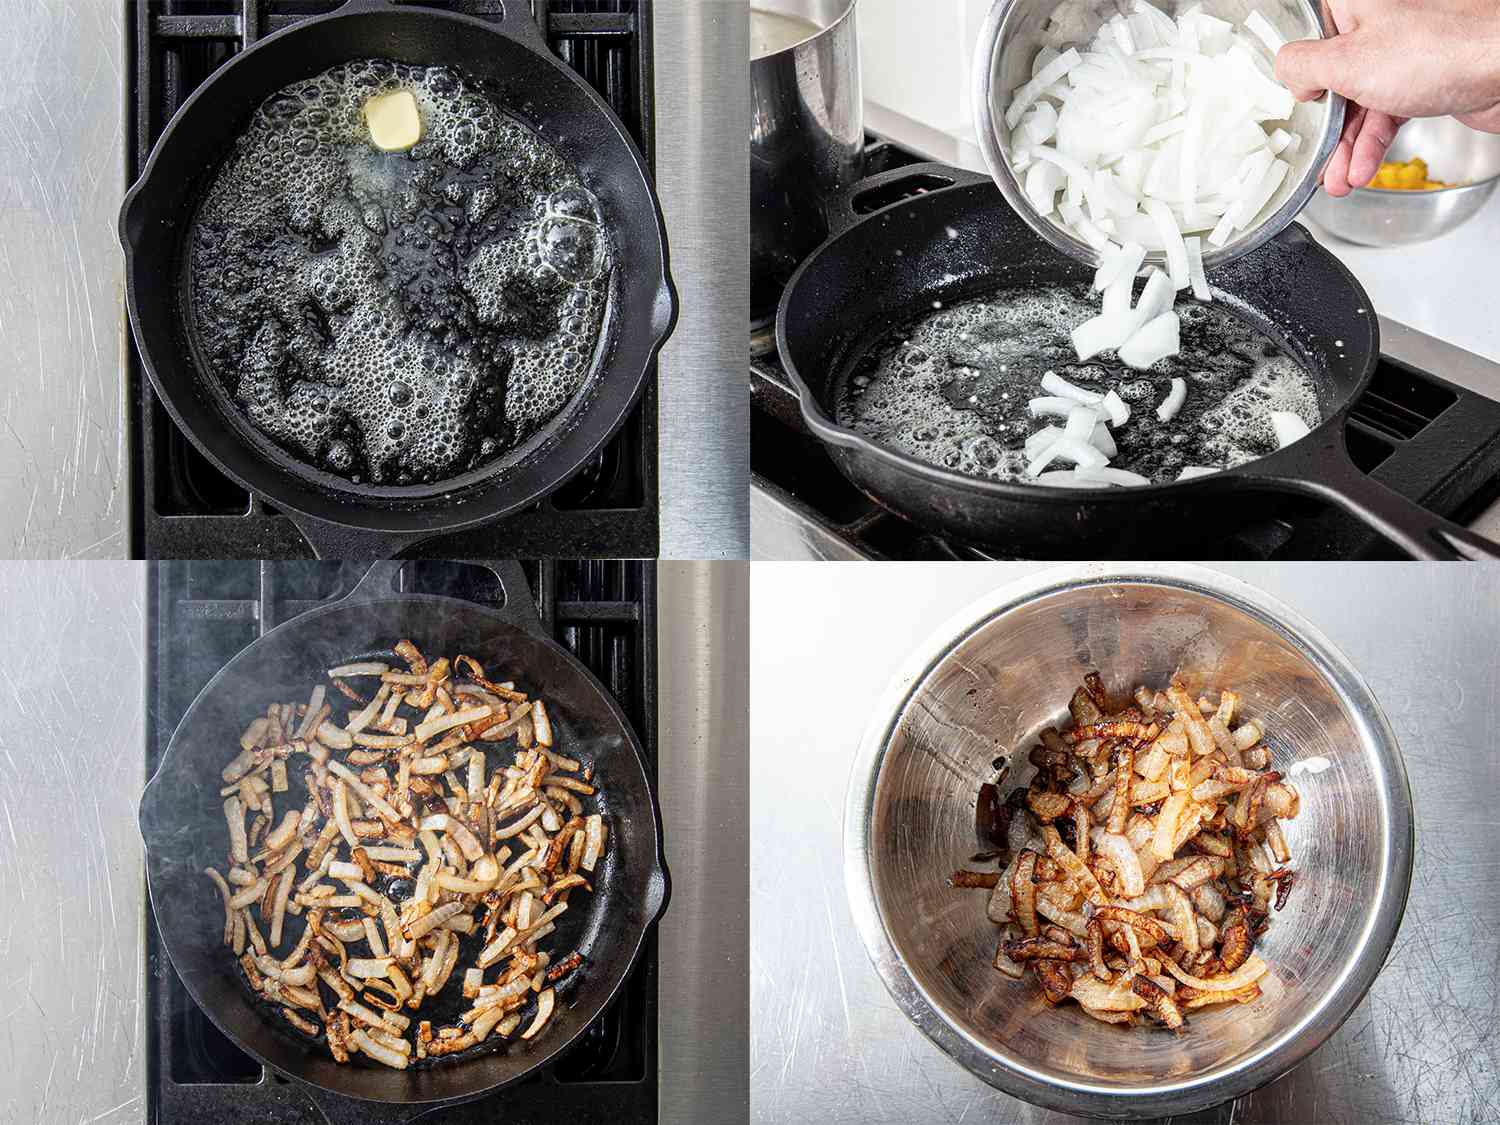 四个图像拼贴。左上:黄油在铸铁煎锅中融化。右上:将洋葱放入铸铁煎锅中。左下:在铸铁煎锅中煎洋葱。右下:金属碗里的洋葱